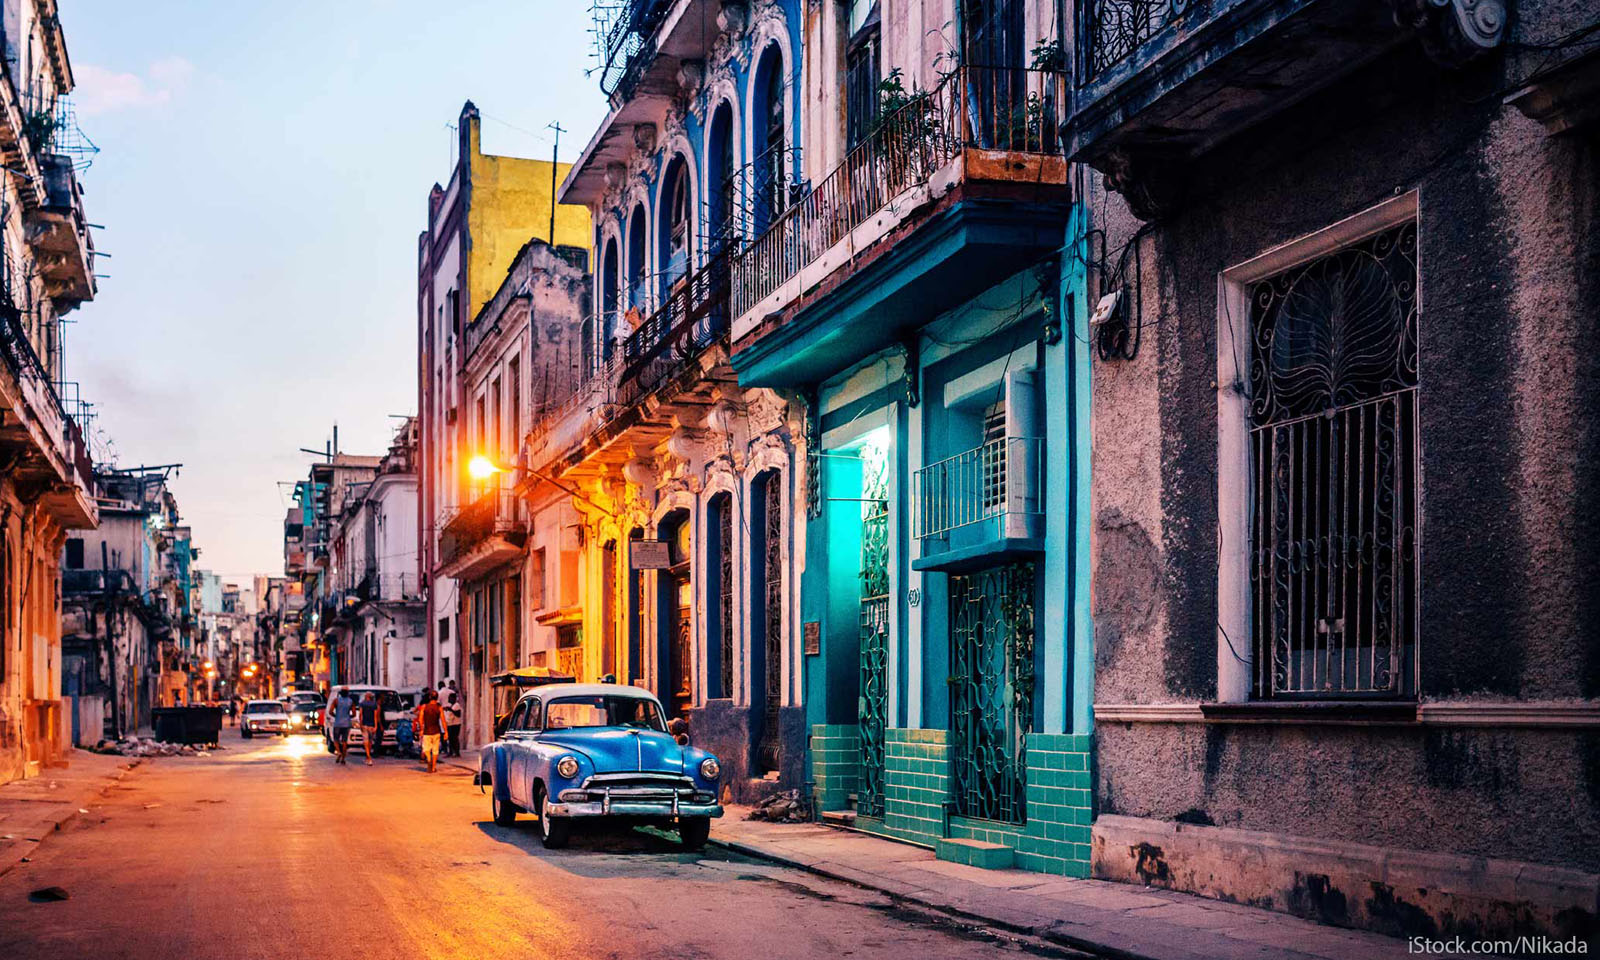 Du lịch Cuba tự túc - Hướng dẫn xin visa du lịch Cuba